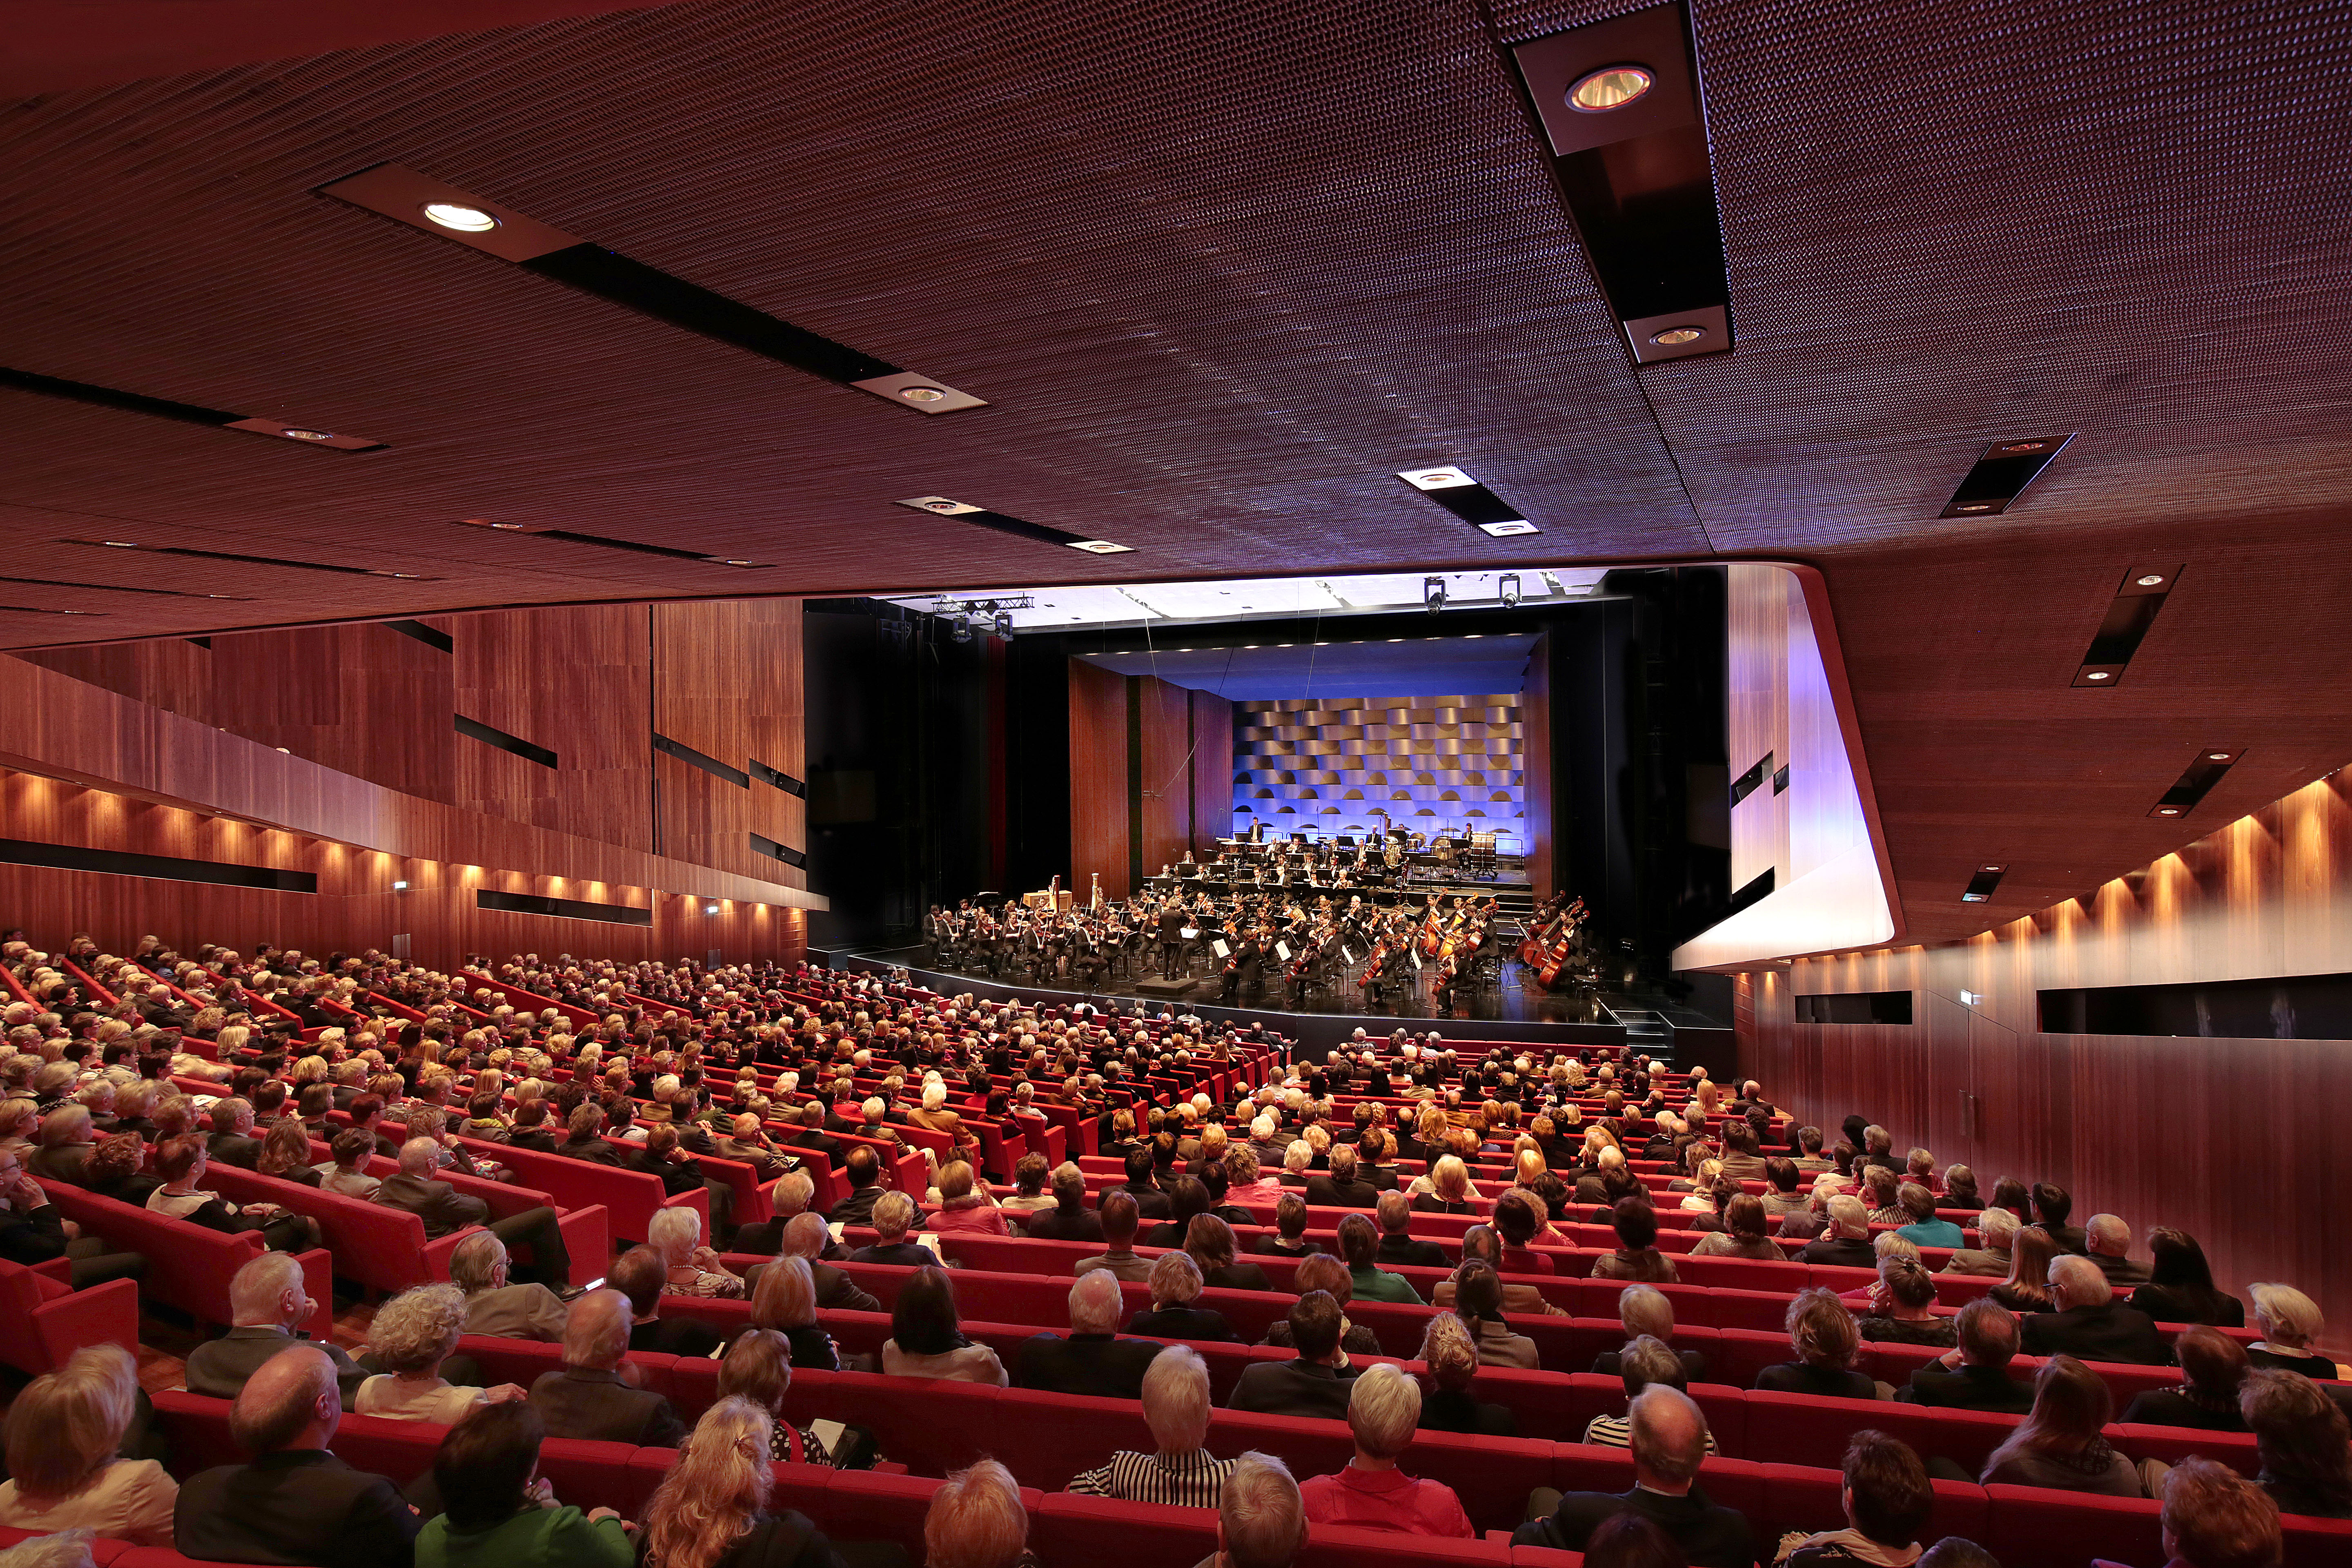 Orchesterkonzert im Großen Saal 2015